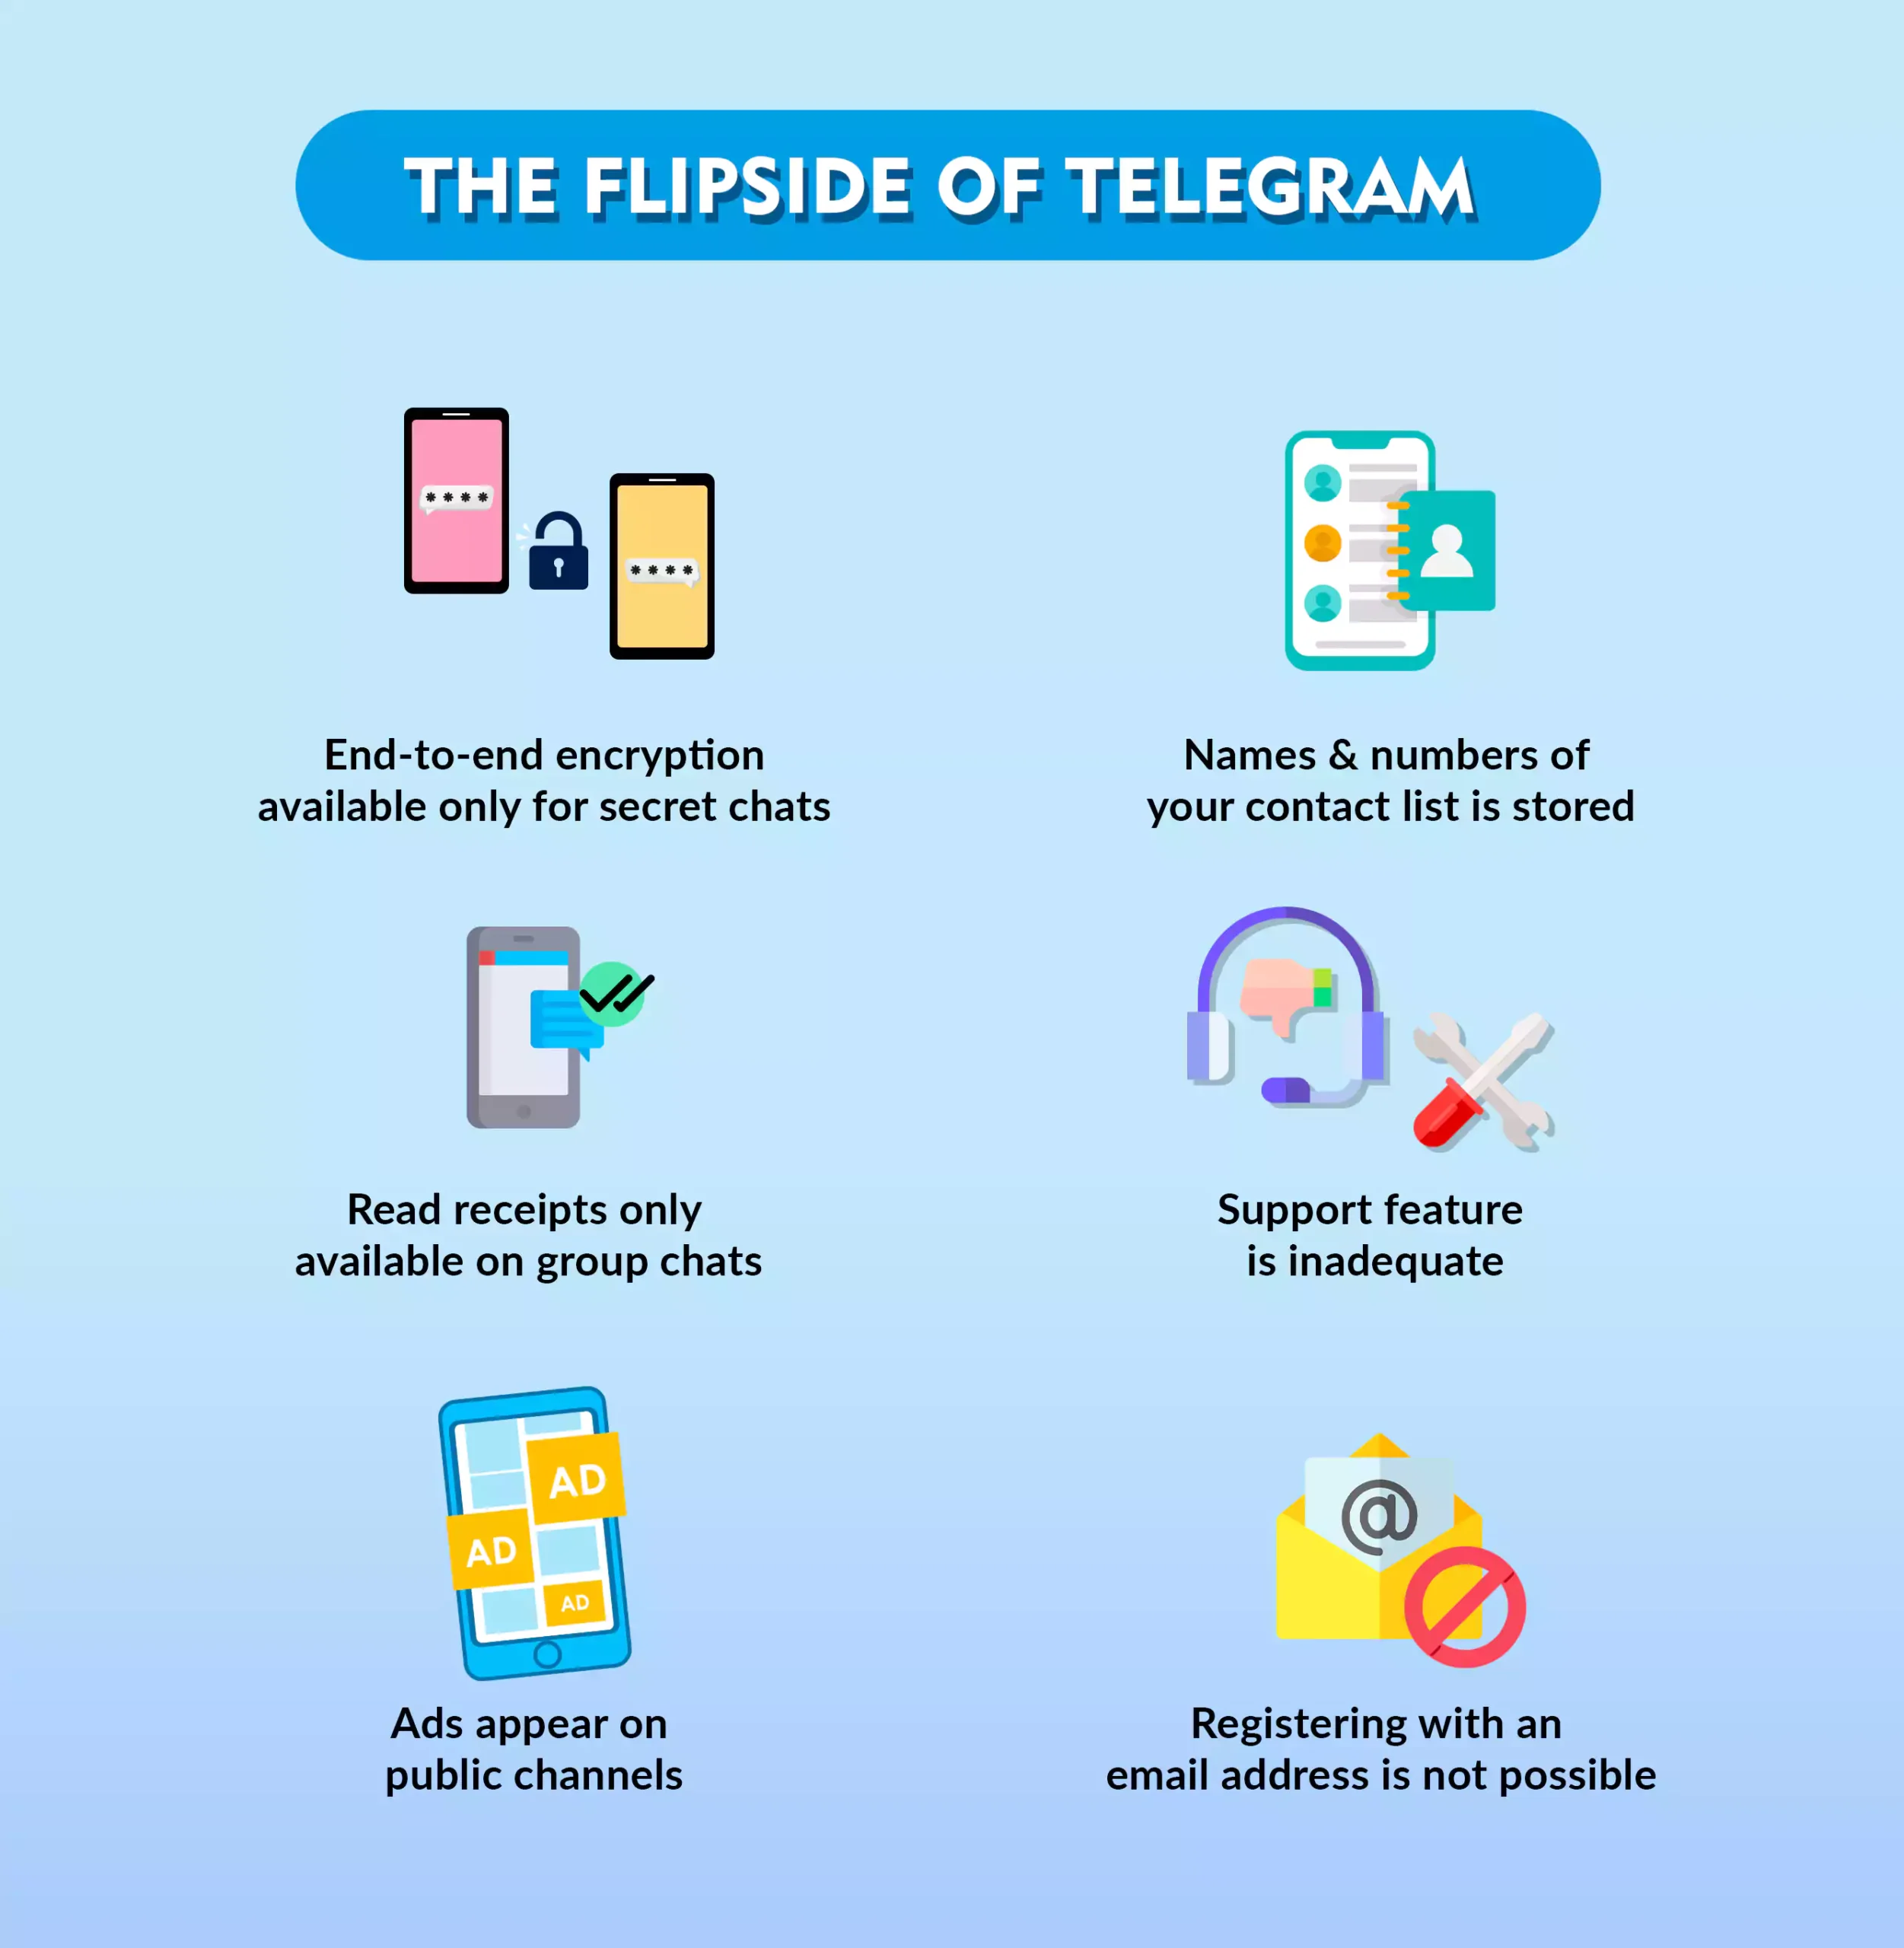 The flipside of Telegram